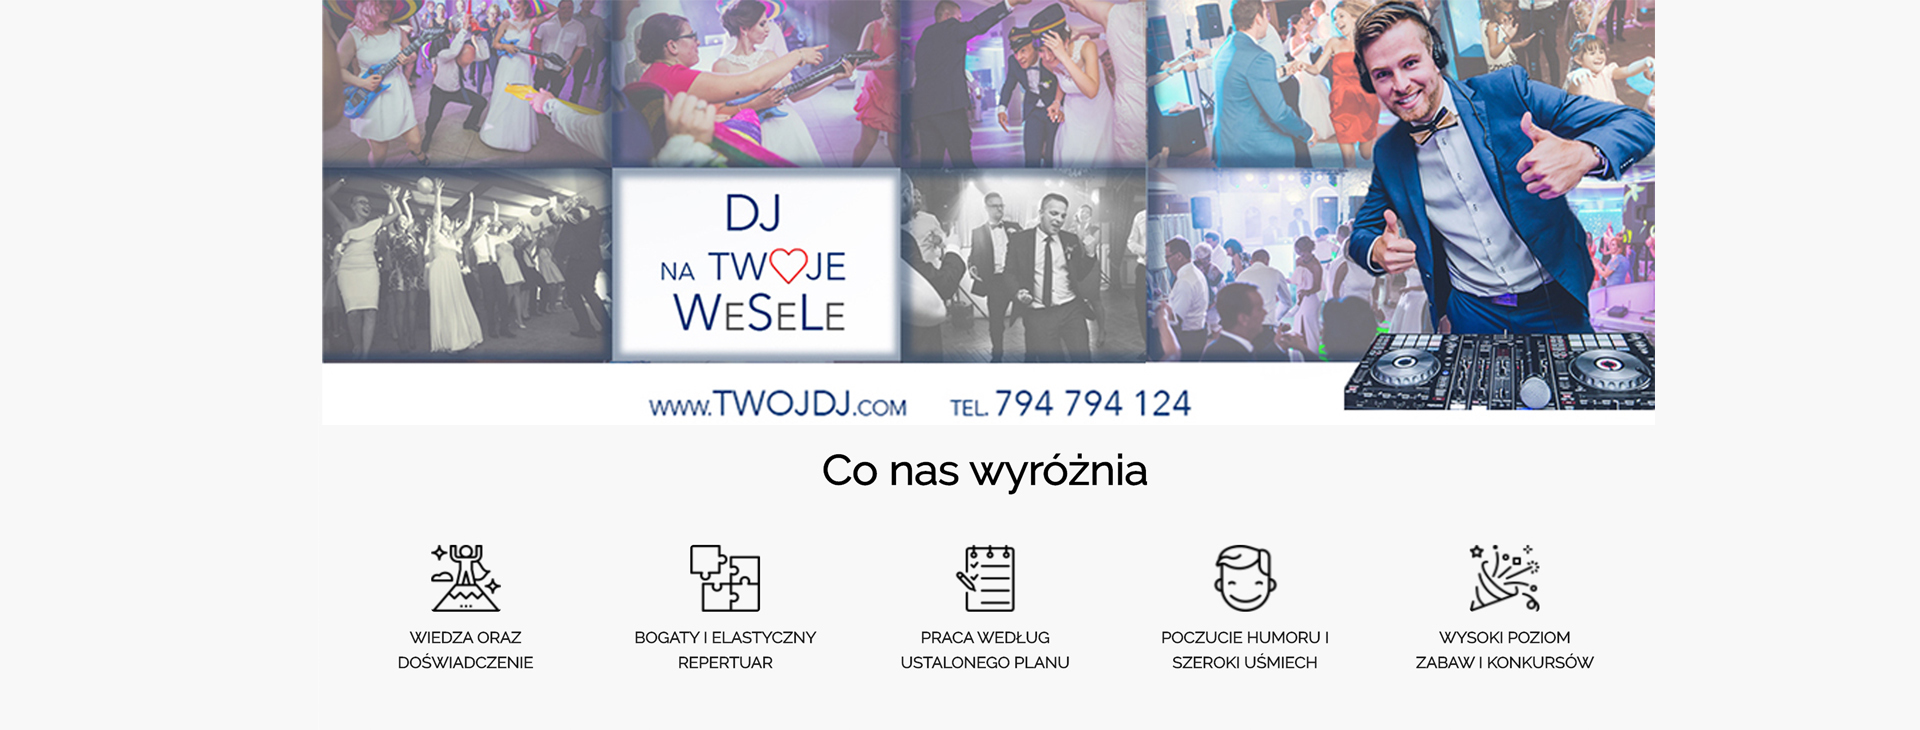 TwojDj & MyPerfectWedding | DJ na wesele Poznań, wielkopolskie - cover 2